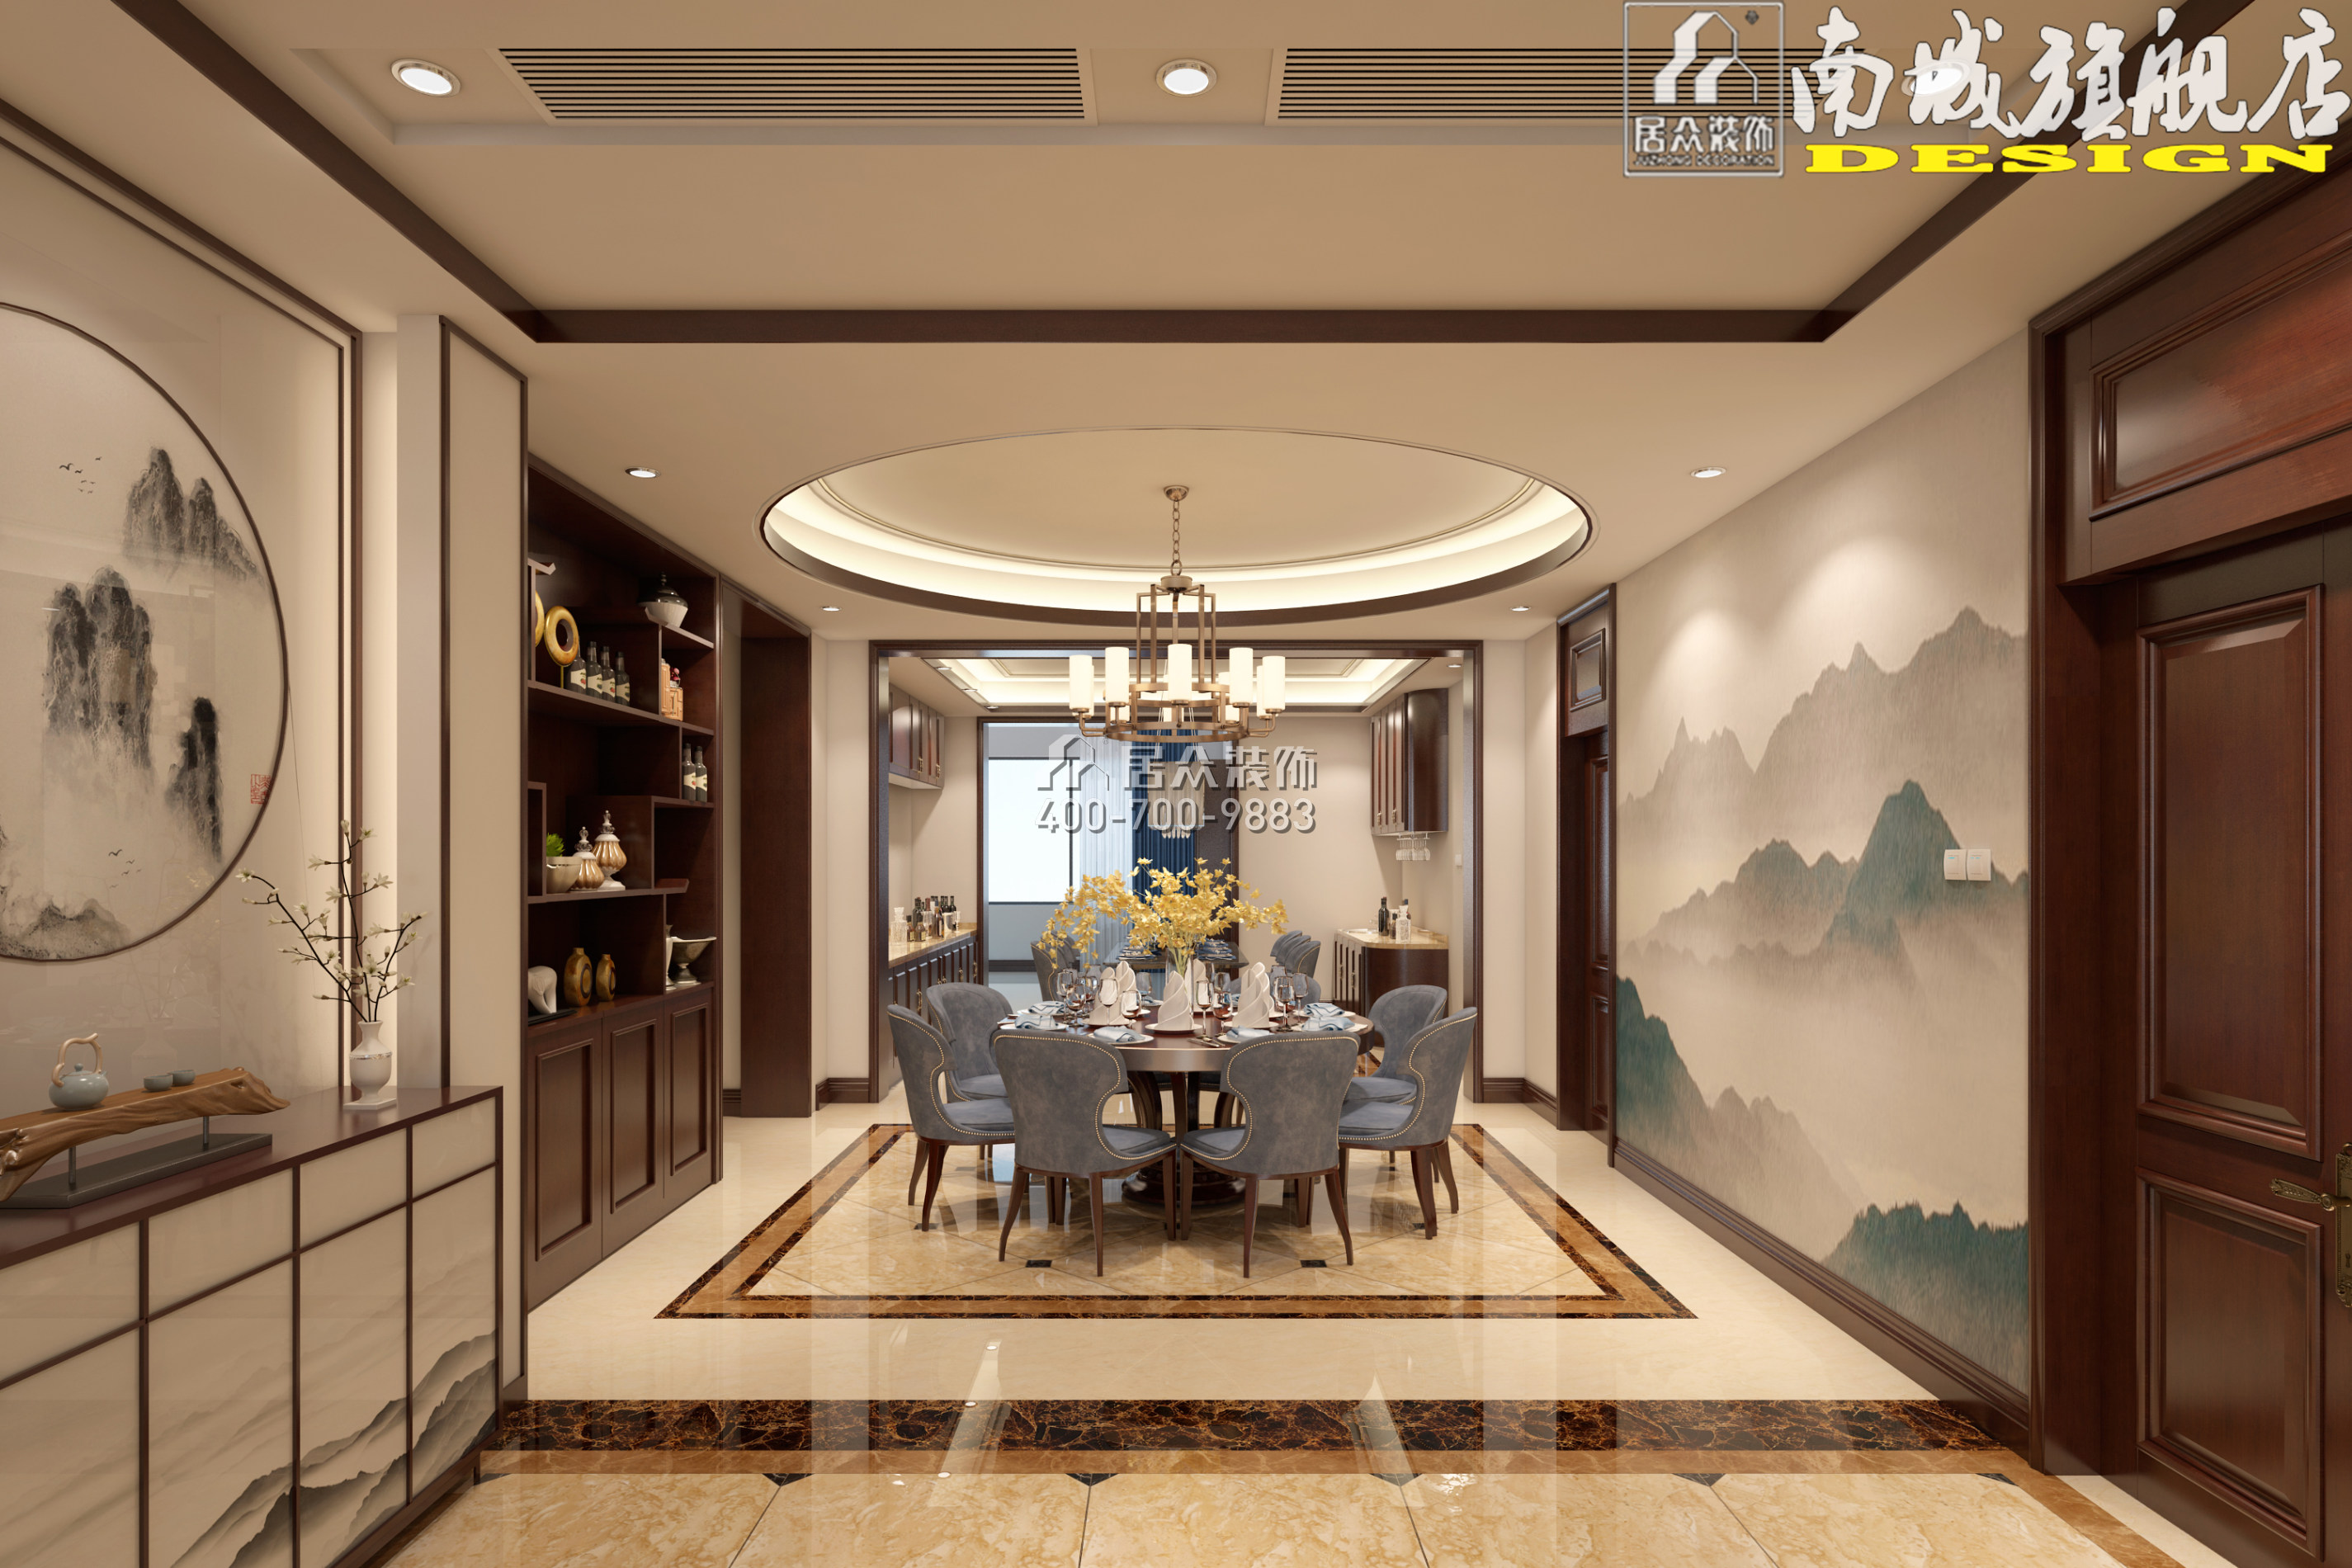 碧桂園天璽彎406平方米中式風格平層戶型餐廳裝修效果圖